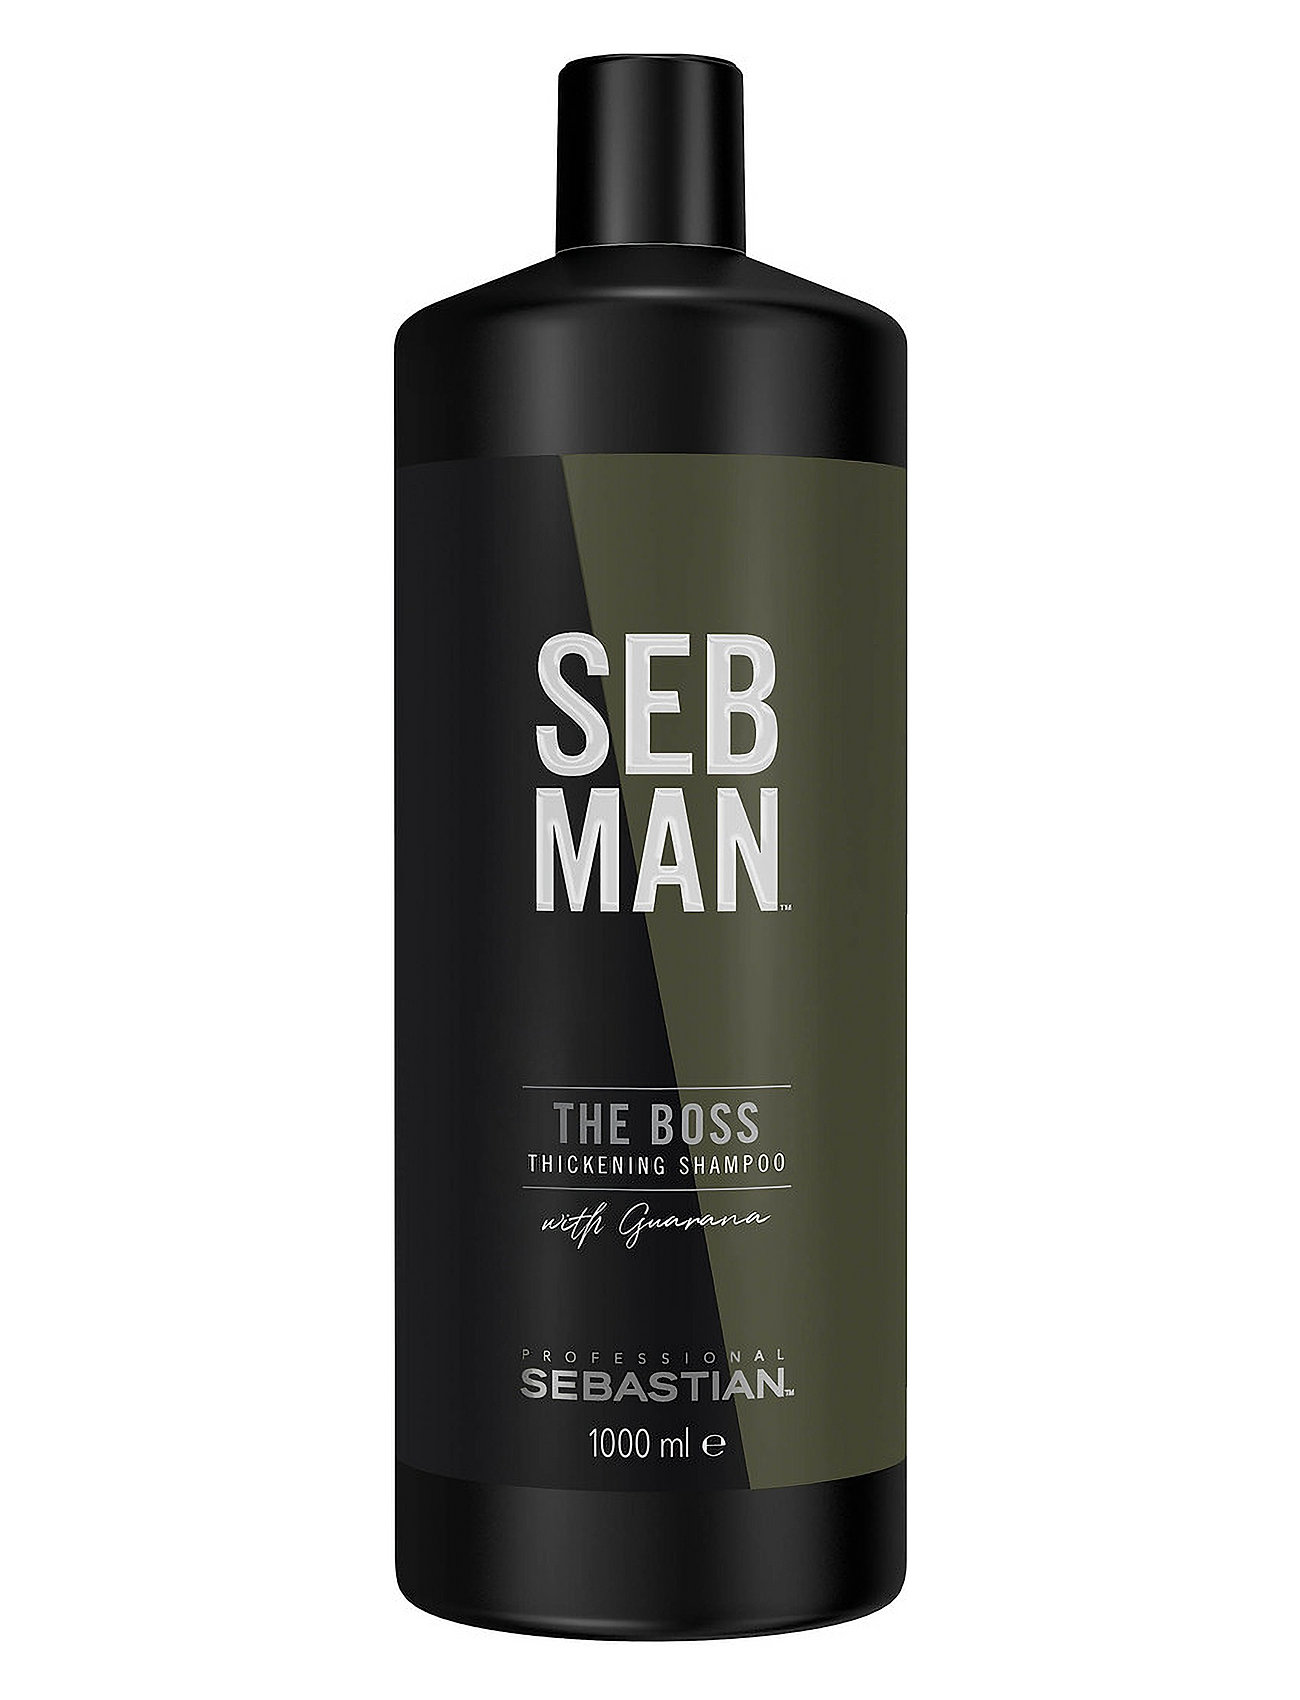 Seb Man The Boss Thickening Shampoo 1.000 Ml Shampoo Nude Sebastian Professional